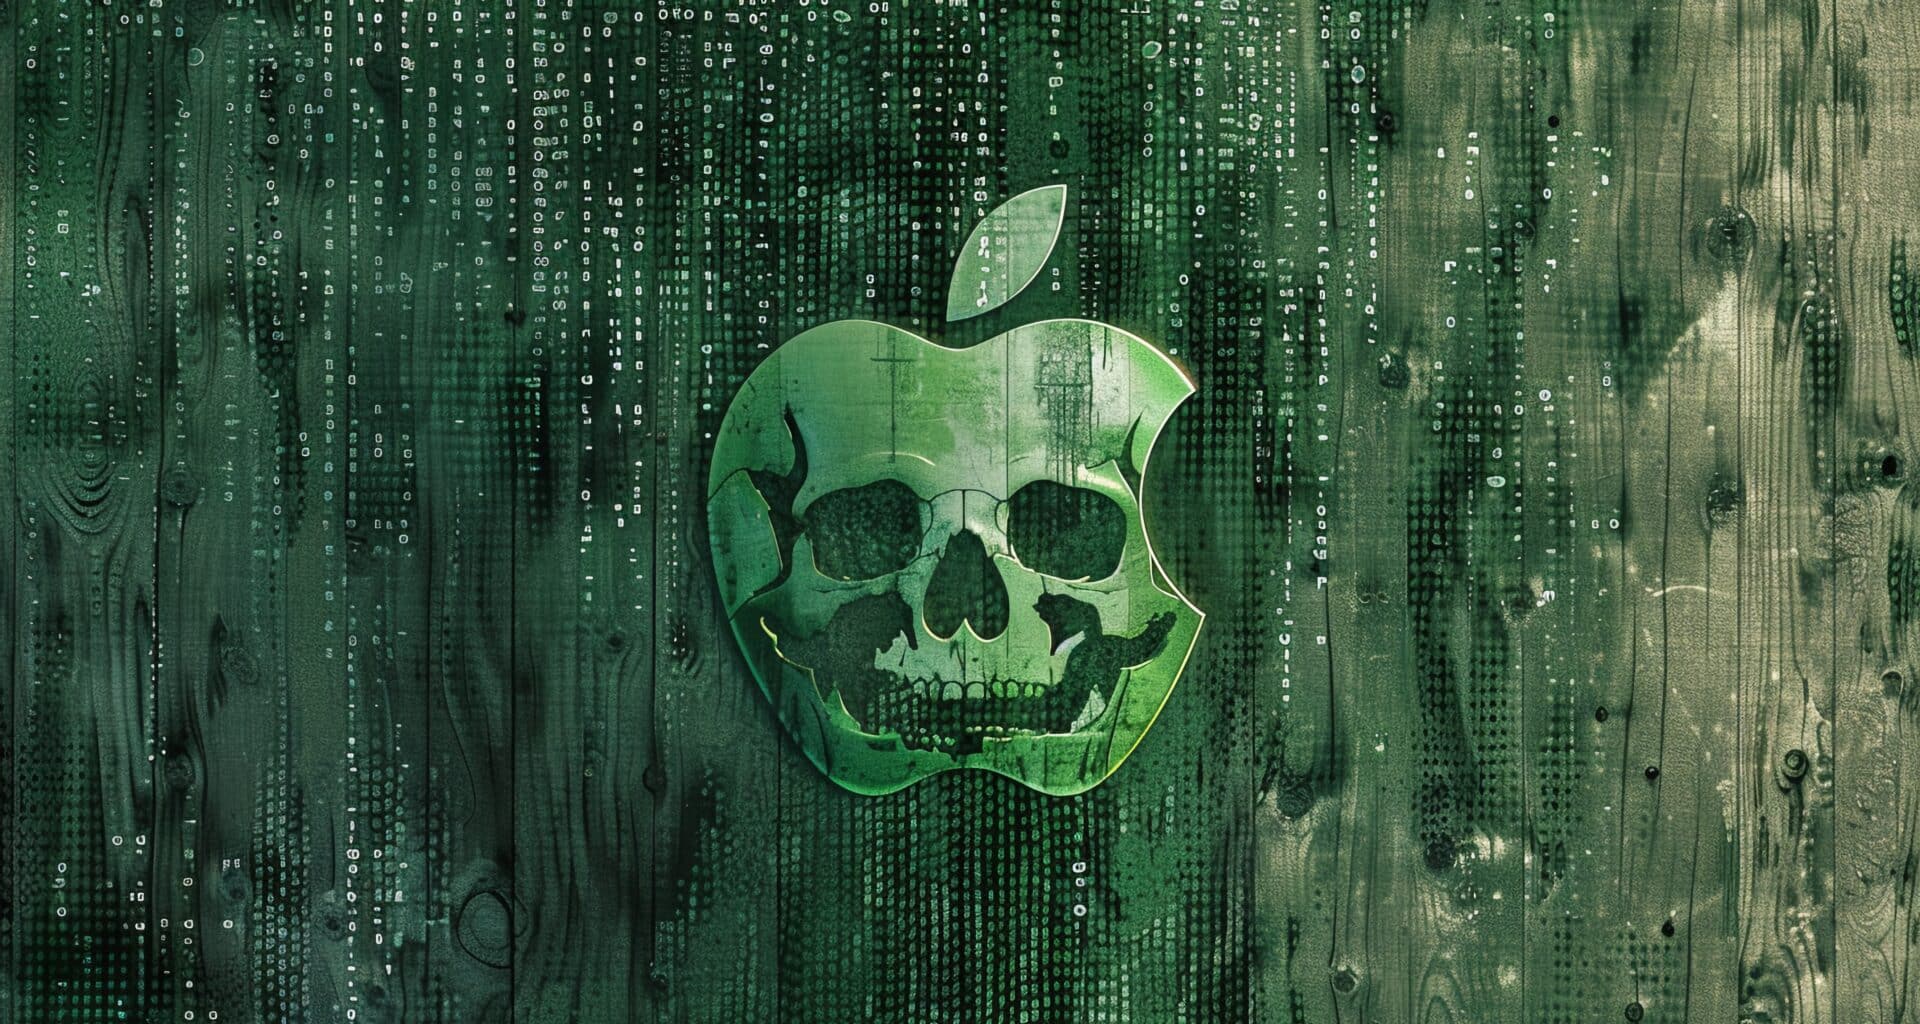 Logo da Apple sobre fundo verde estilo Matrix com caveira em alusão a malwares/vírus